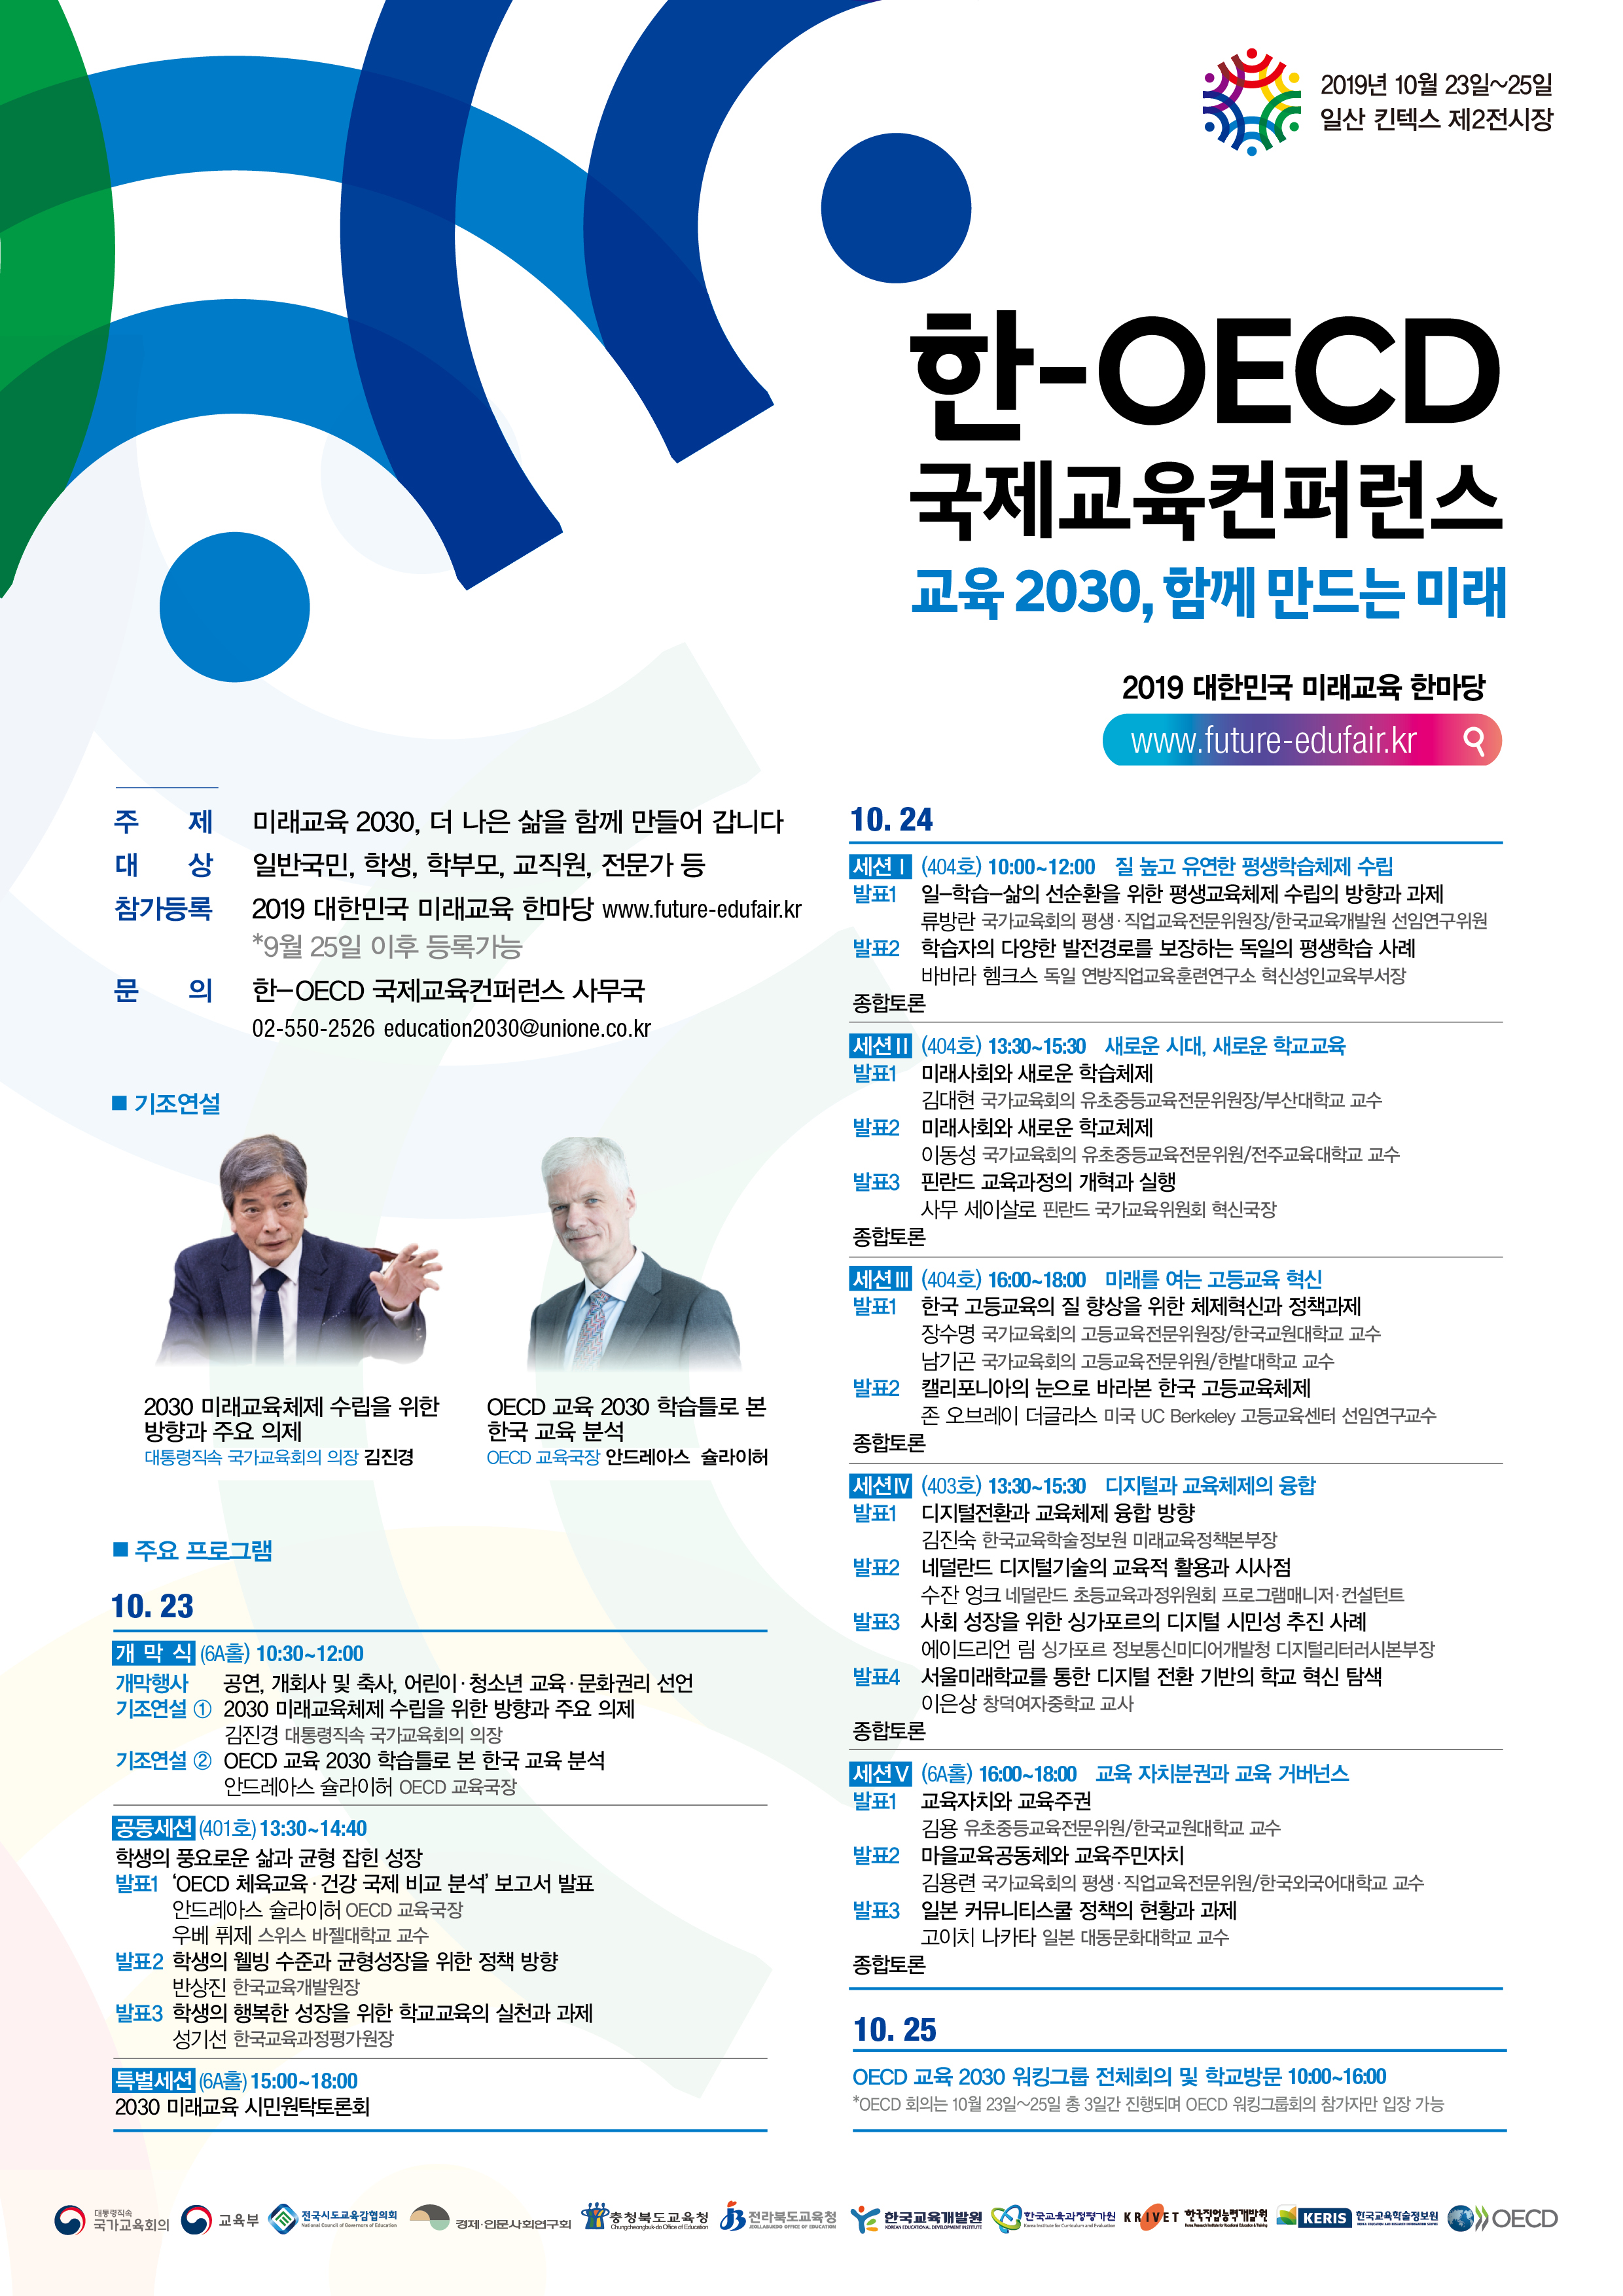 [대외활동] 한-OECD 국제교육컨퍼런스 개최 안내